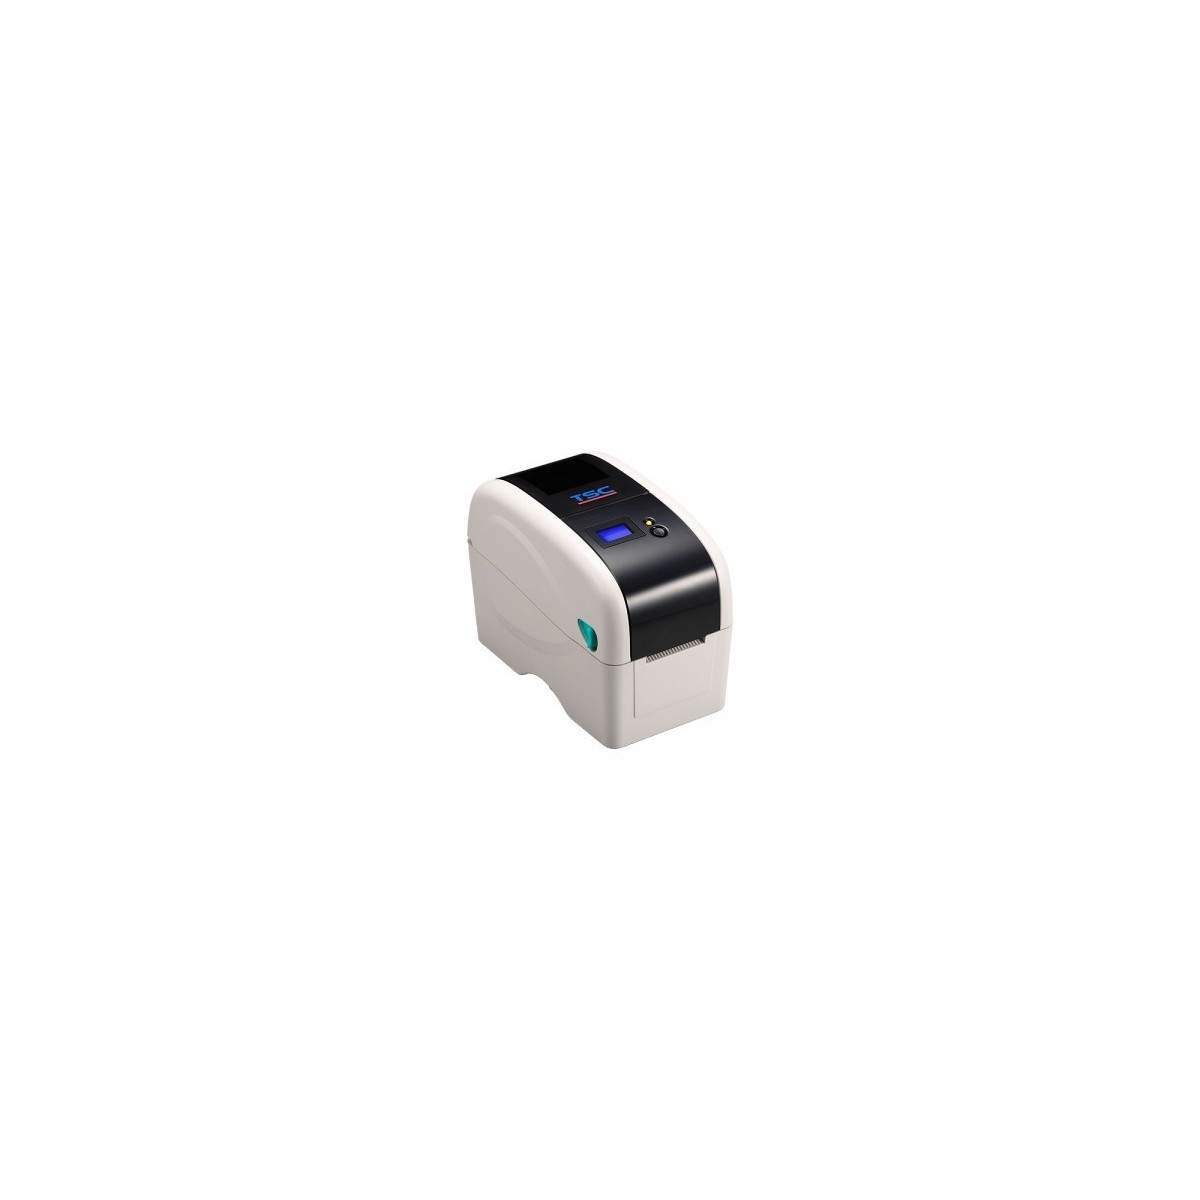 TSC TTP-323 12 Punkte/mm 300dpi TSPL-EZ USB RS232 beige - Label Printer - Label Printer